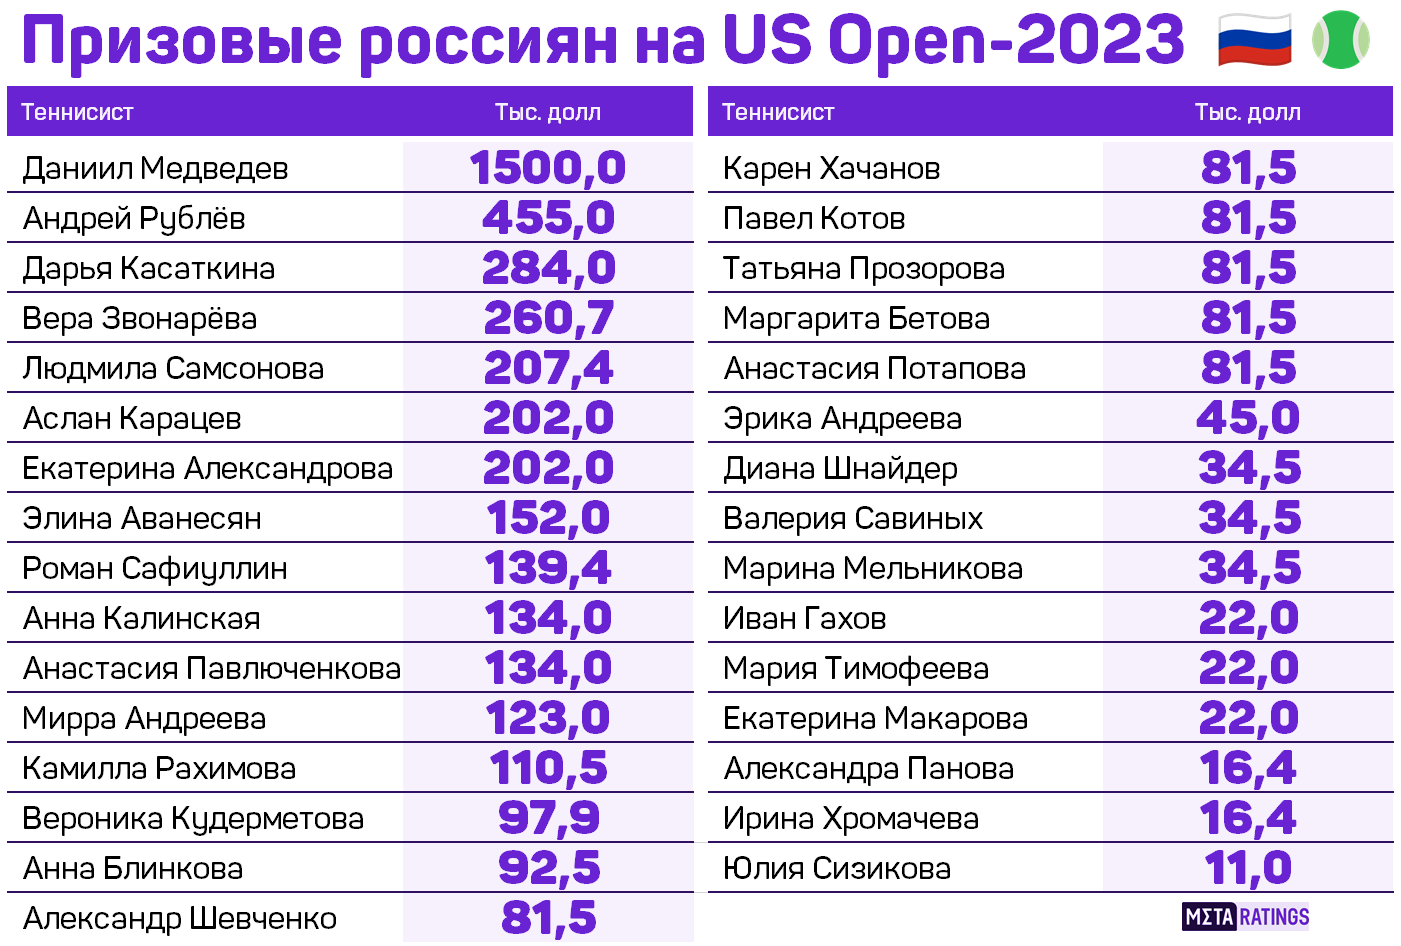 Призовые россиян на US Open-2023